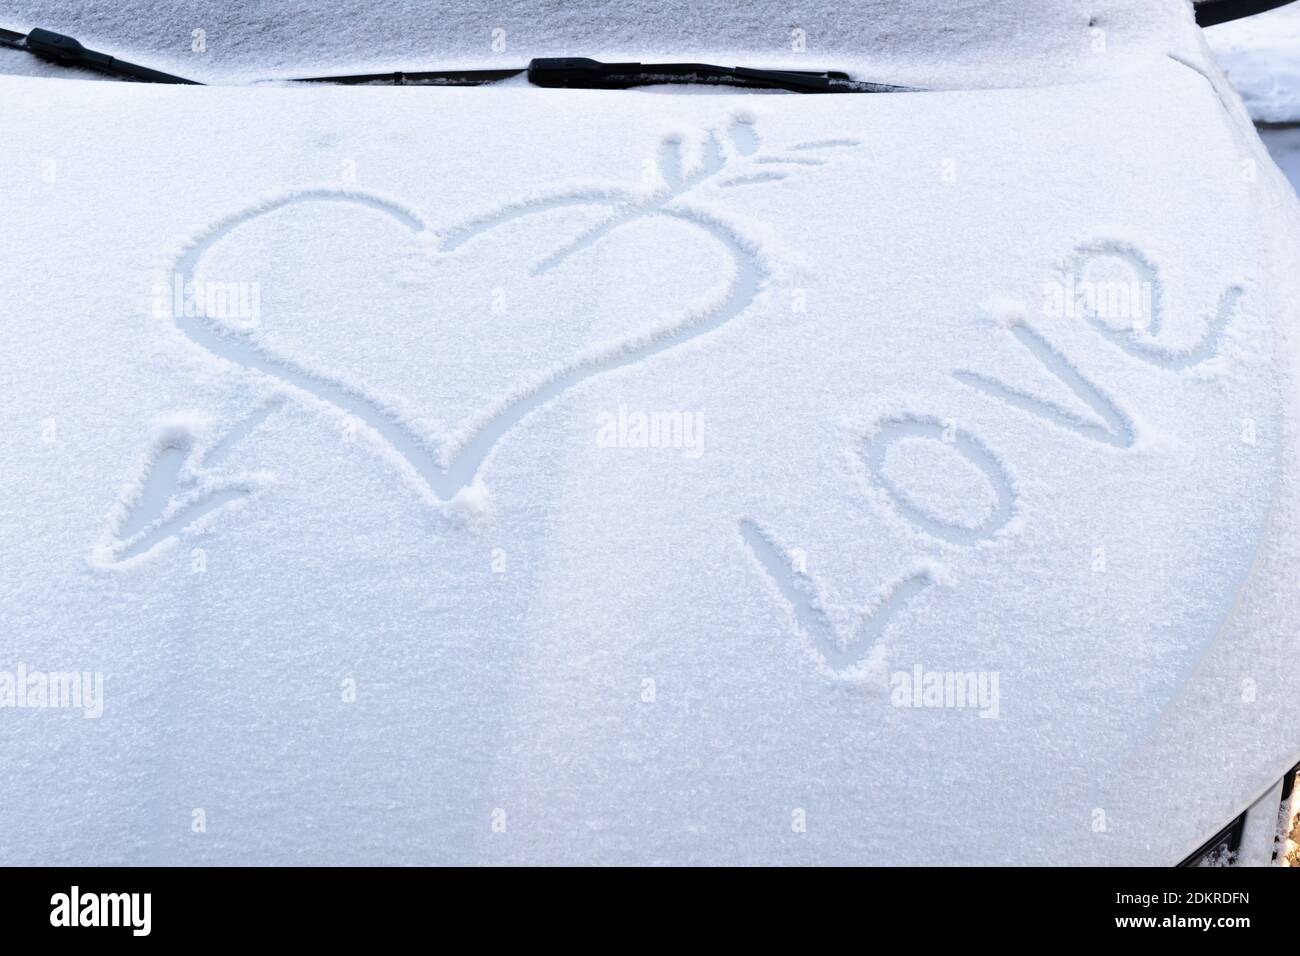 immagine di un cuore rotto con una freccia nel neve sul cofano di un'auto su una gelata giorno invernale Foto Stock